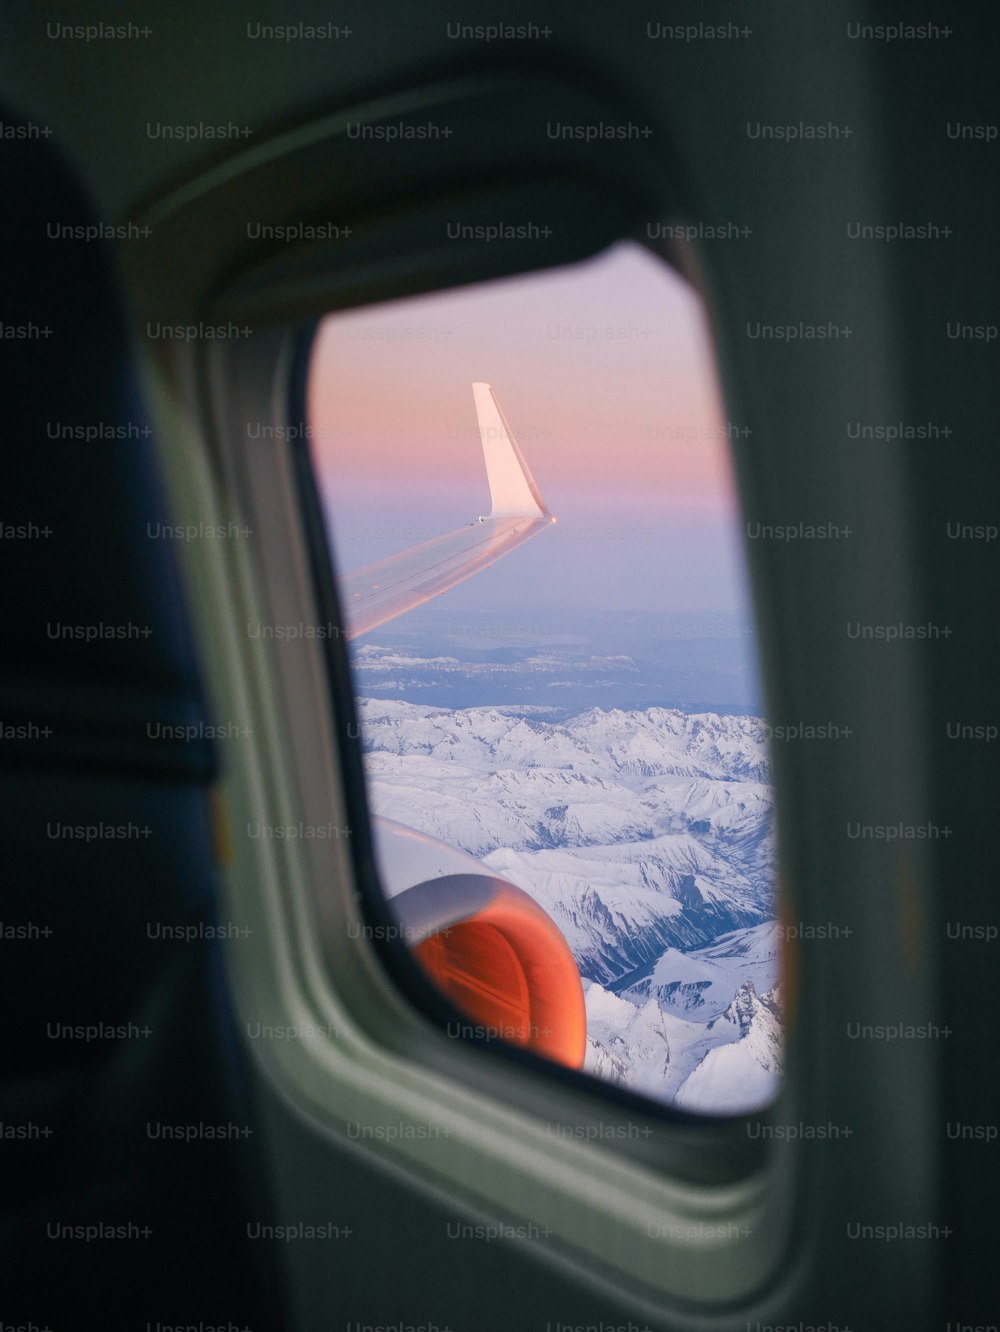 une vue de l’aile d’un avion à travers une fenêtre